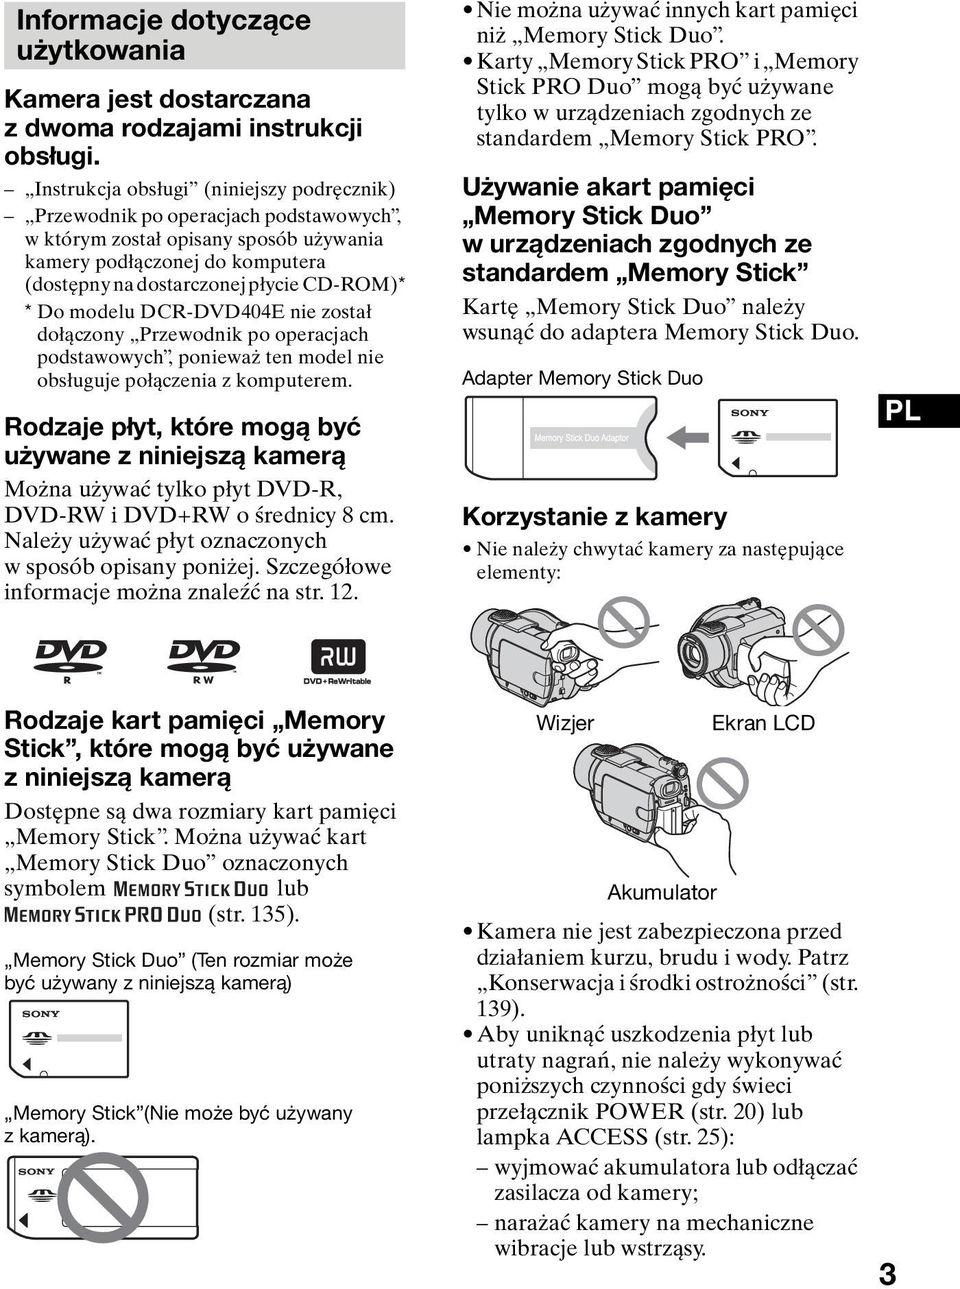 modelu DCR-DVD404E nie został dołączony Przewodnik po operacjach podstawowych, ponieważ ten model nie obsługuje połączenia z komputerem.